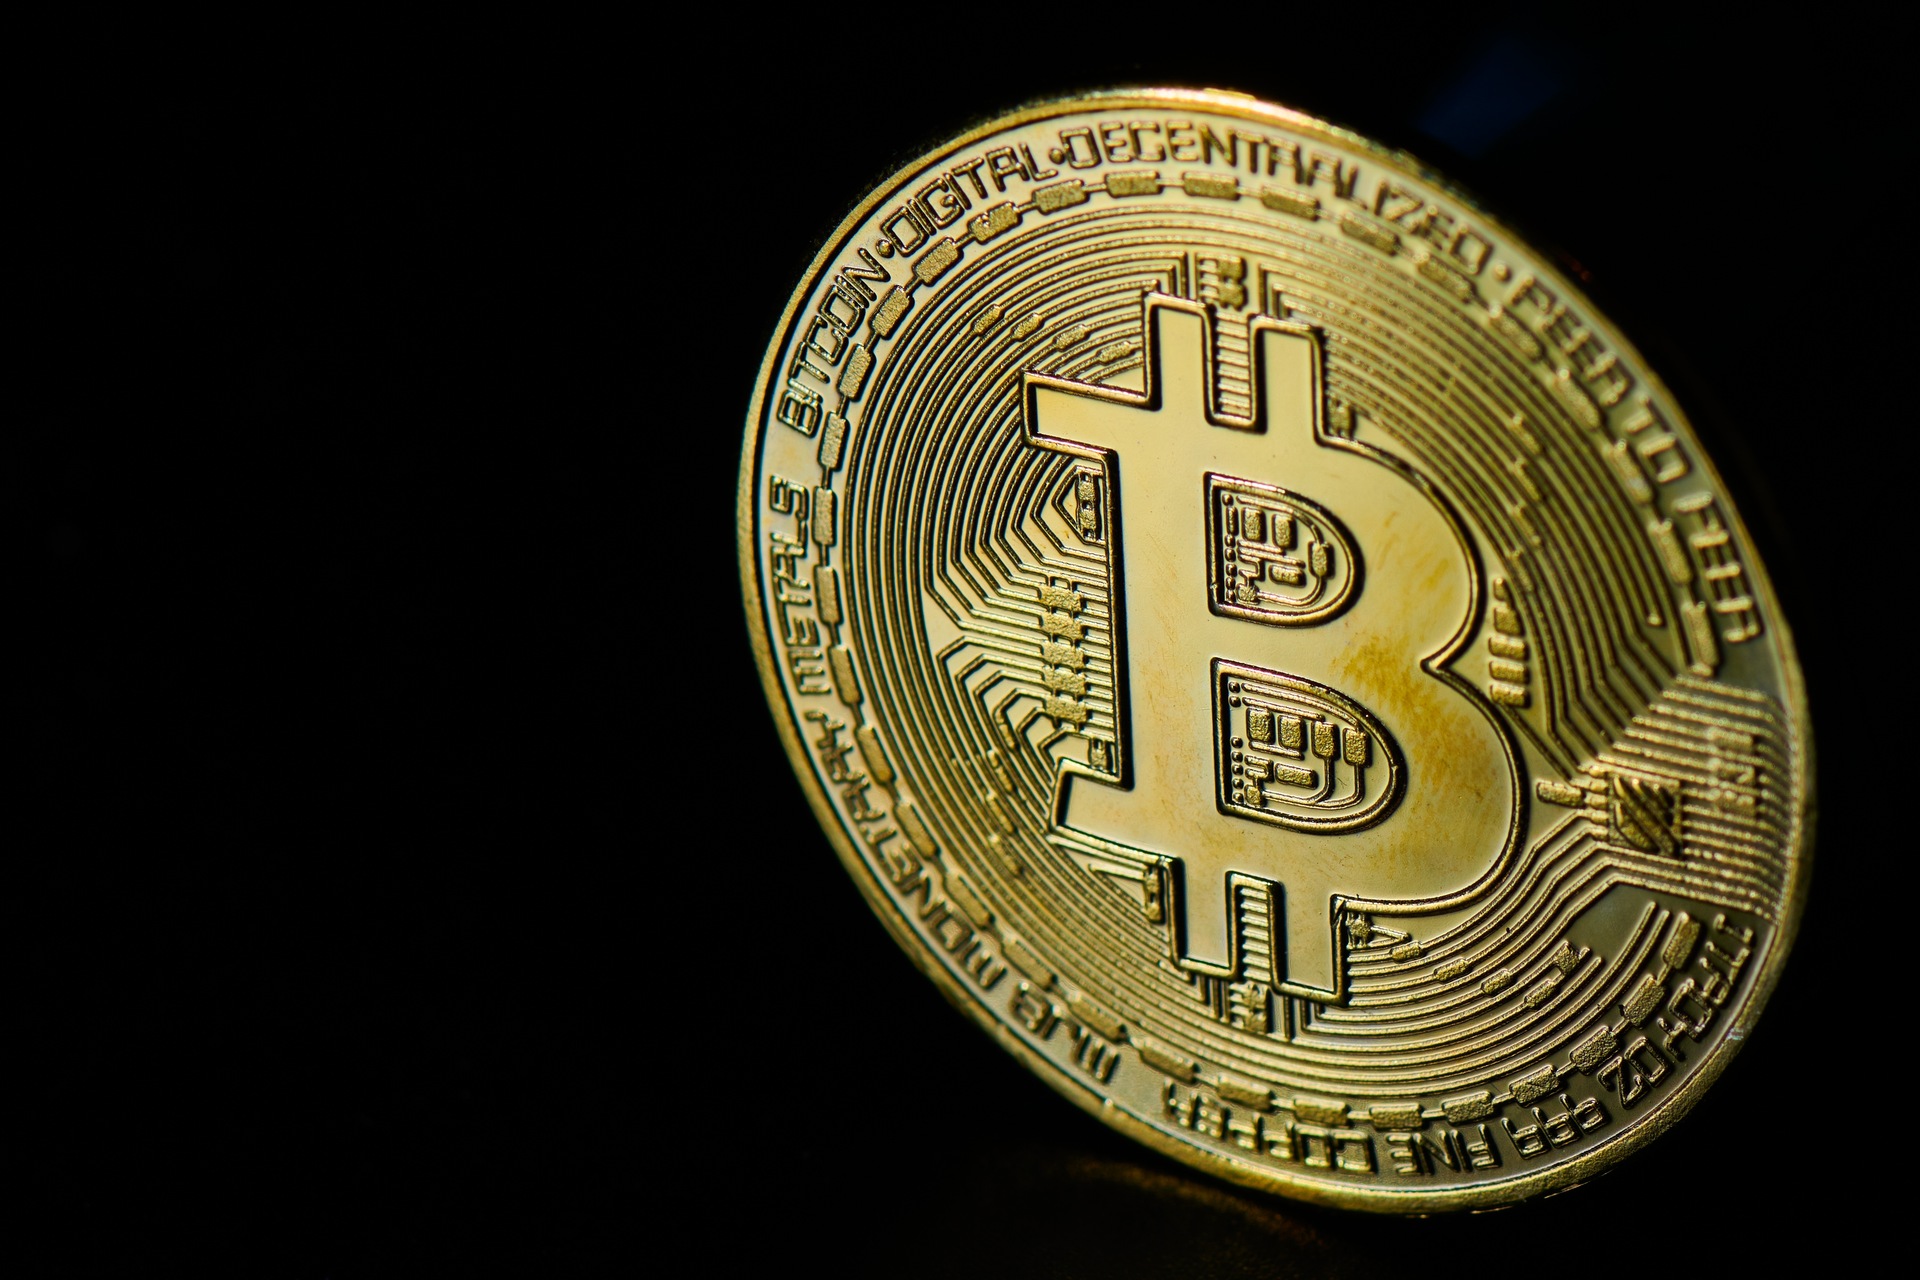 Cryptocurrencies: Bitcoin is een cryptocurrency en een betalingssysteem voor internationale valuta dat in 2009 is gecreëerd door een anonieme uitvinder, bekend onder het pseudoniem "Satoshi Nakamoto", die een idee ontwikkelde dat hij eind 2008 op internet presenteerde